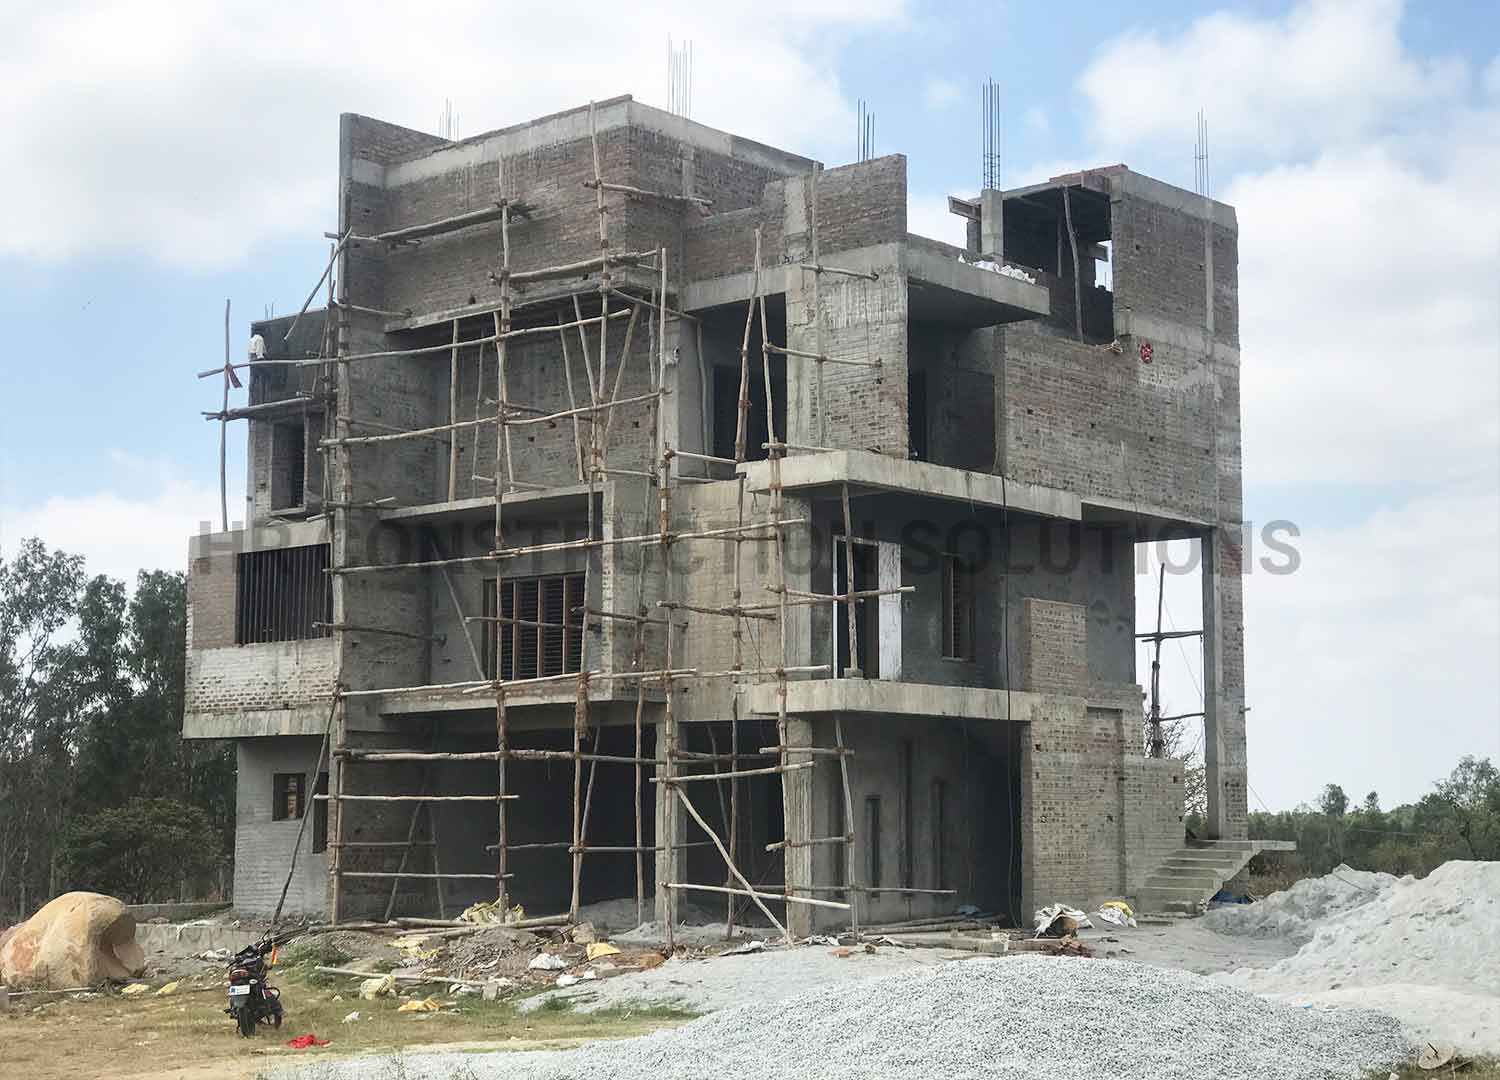 Nanjappa House | HRConstructionsolutions I Bangalore